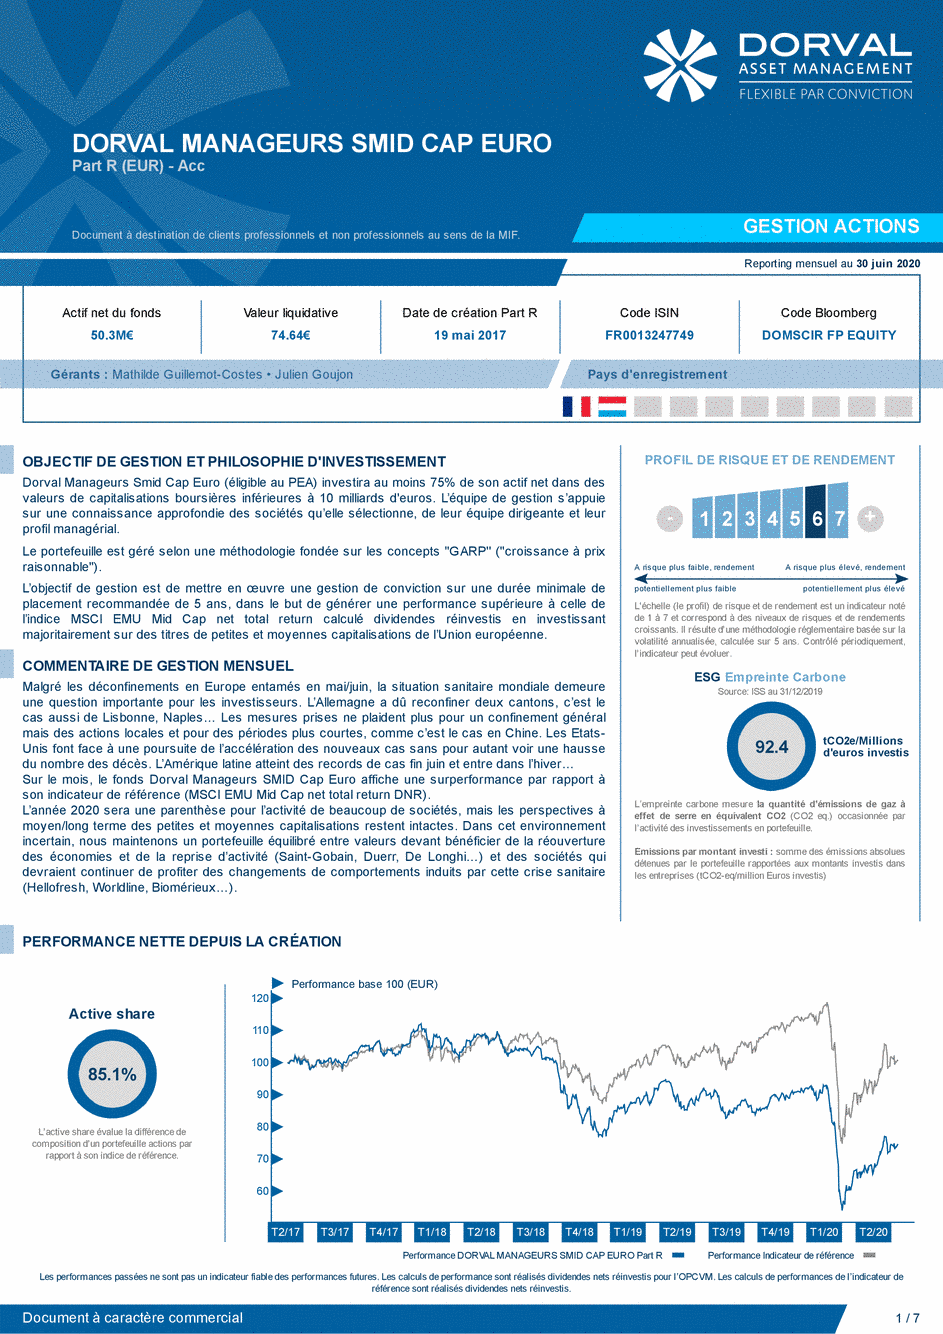 Reporting DORVAL MANAGEURS SMID CAP EURO Part R - 30/06/2020 - Français